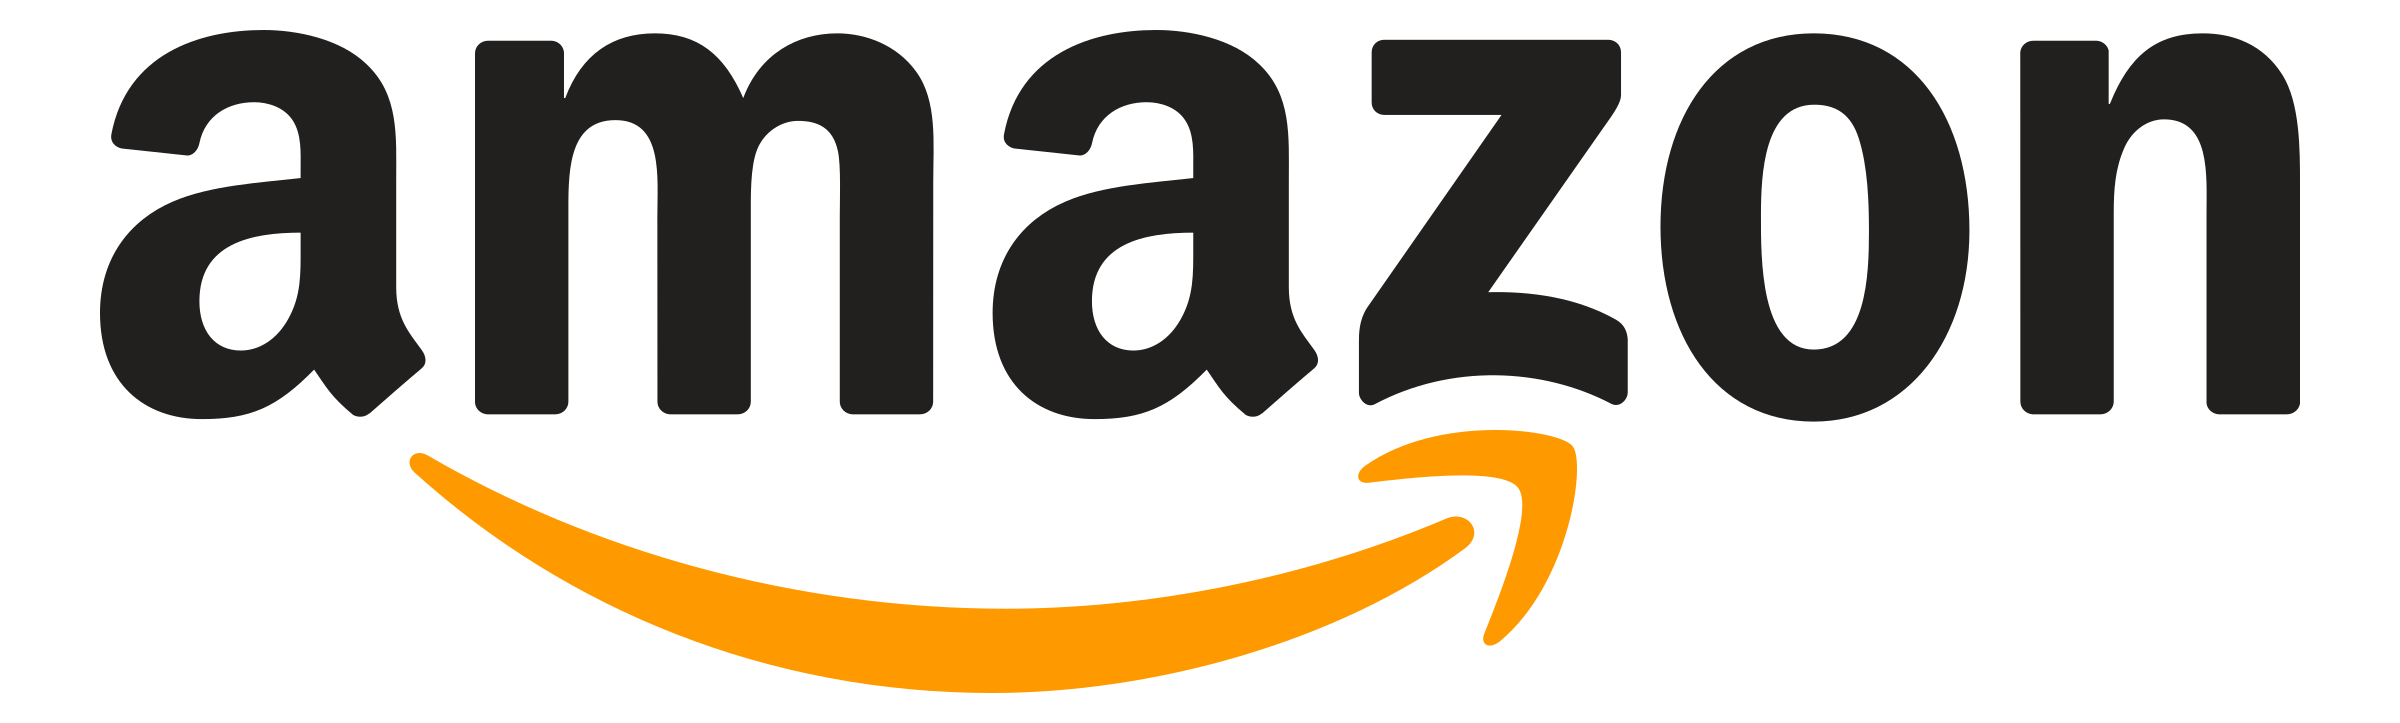 amazon company logo